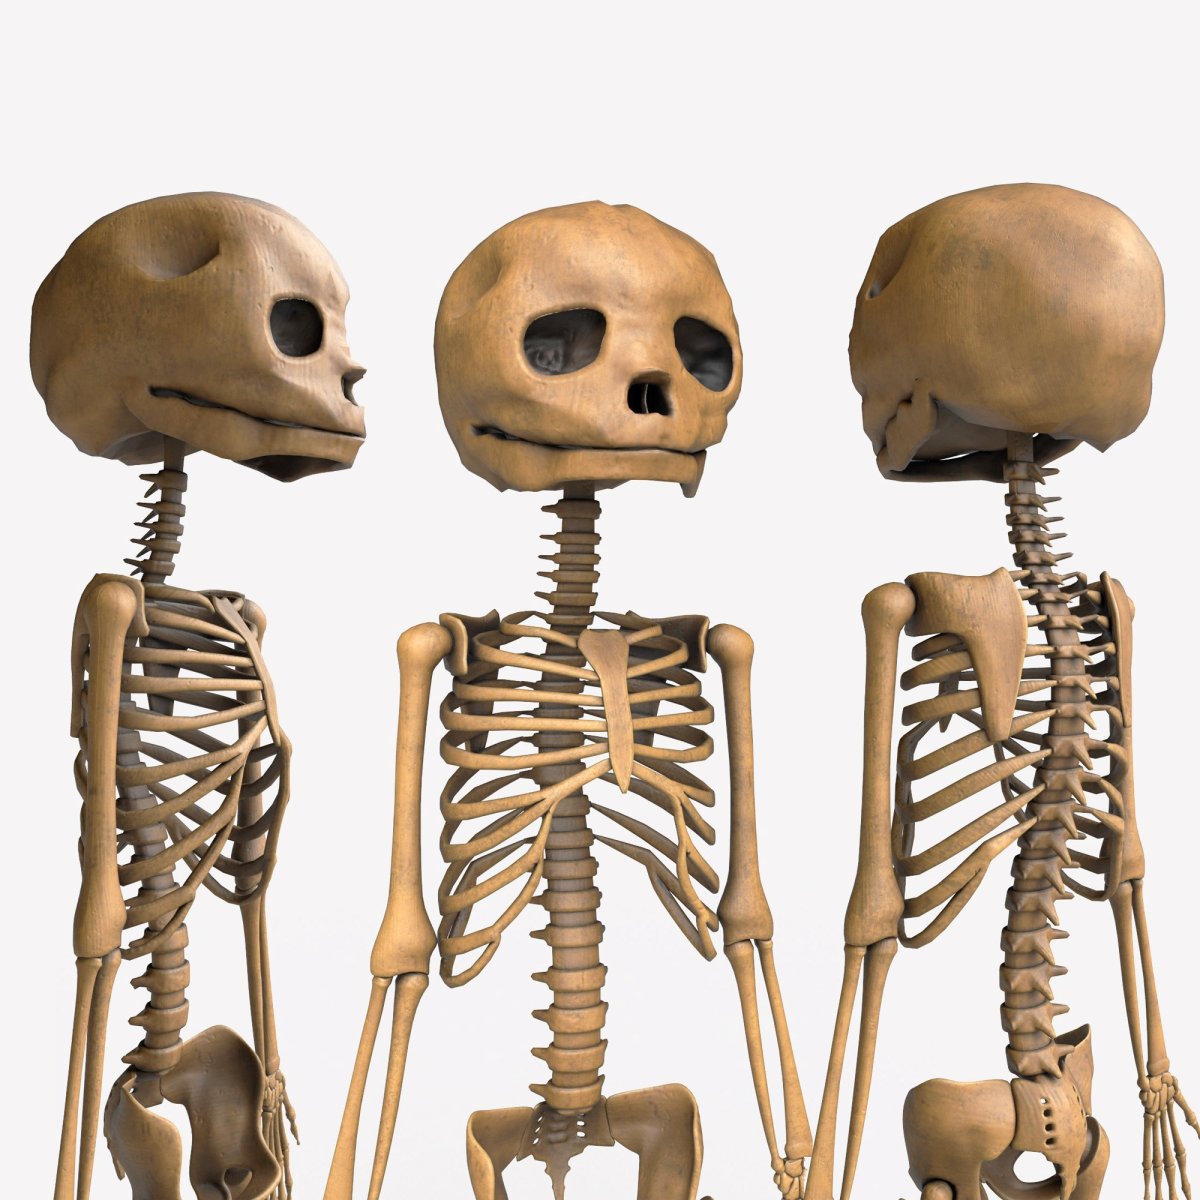 Скелет в 3д Макс